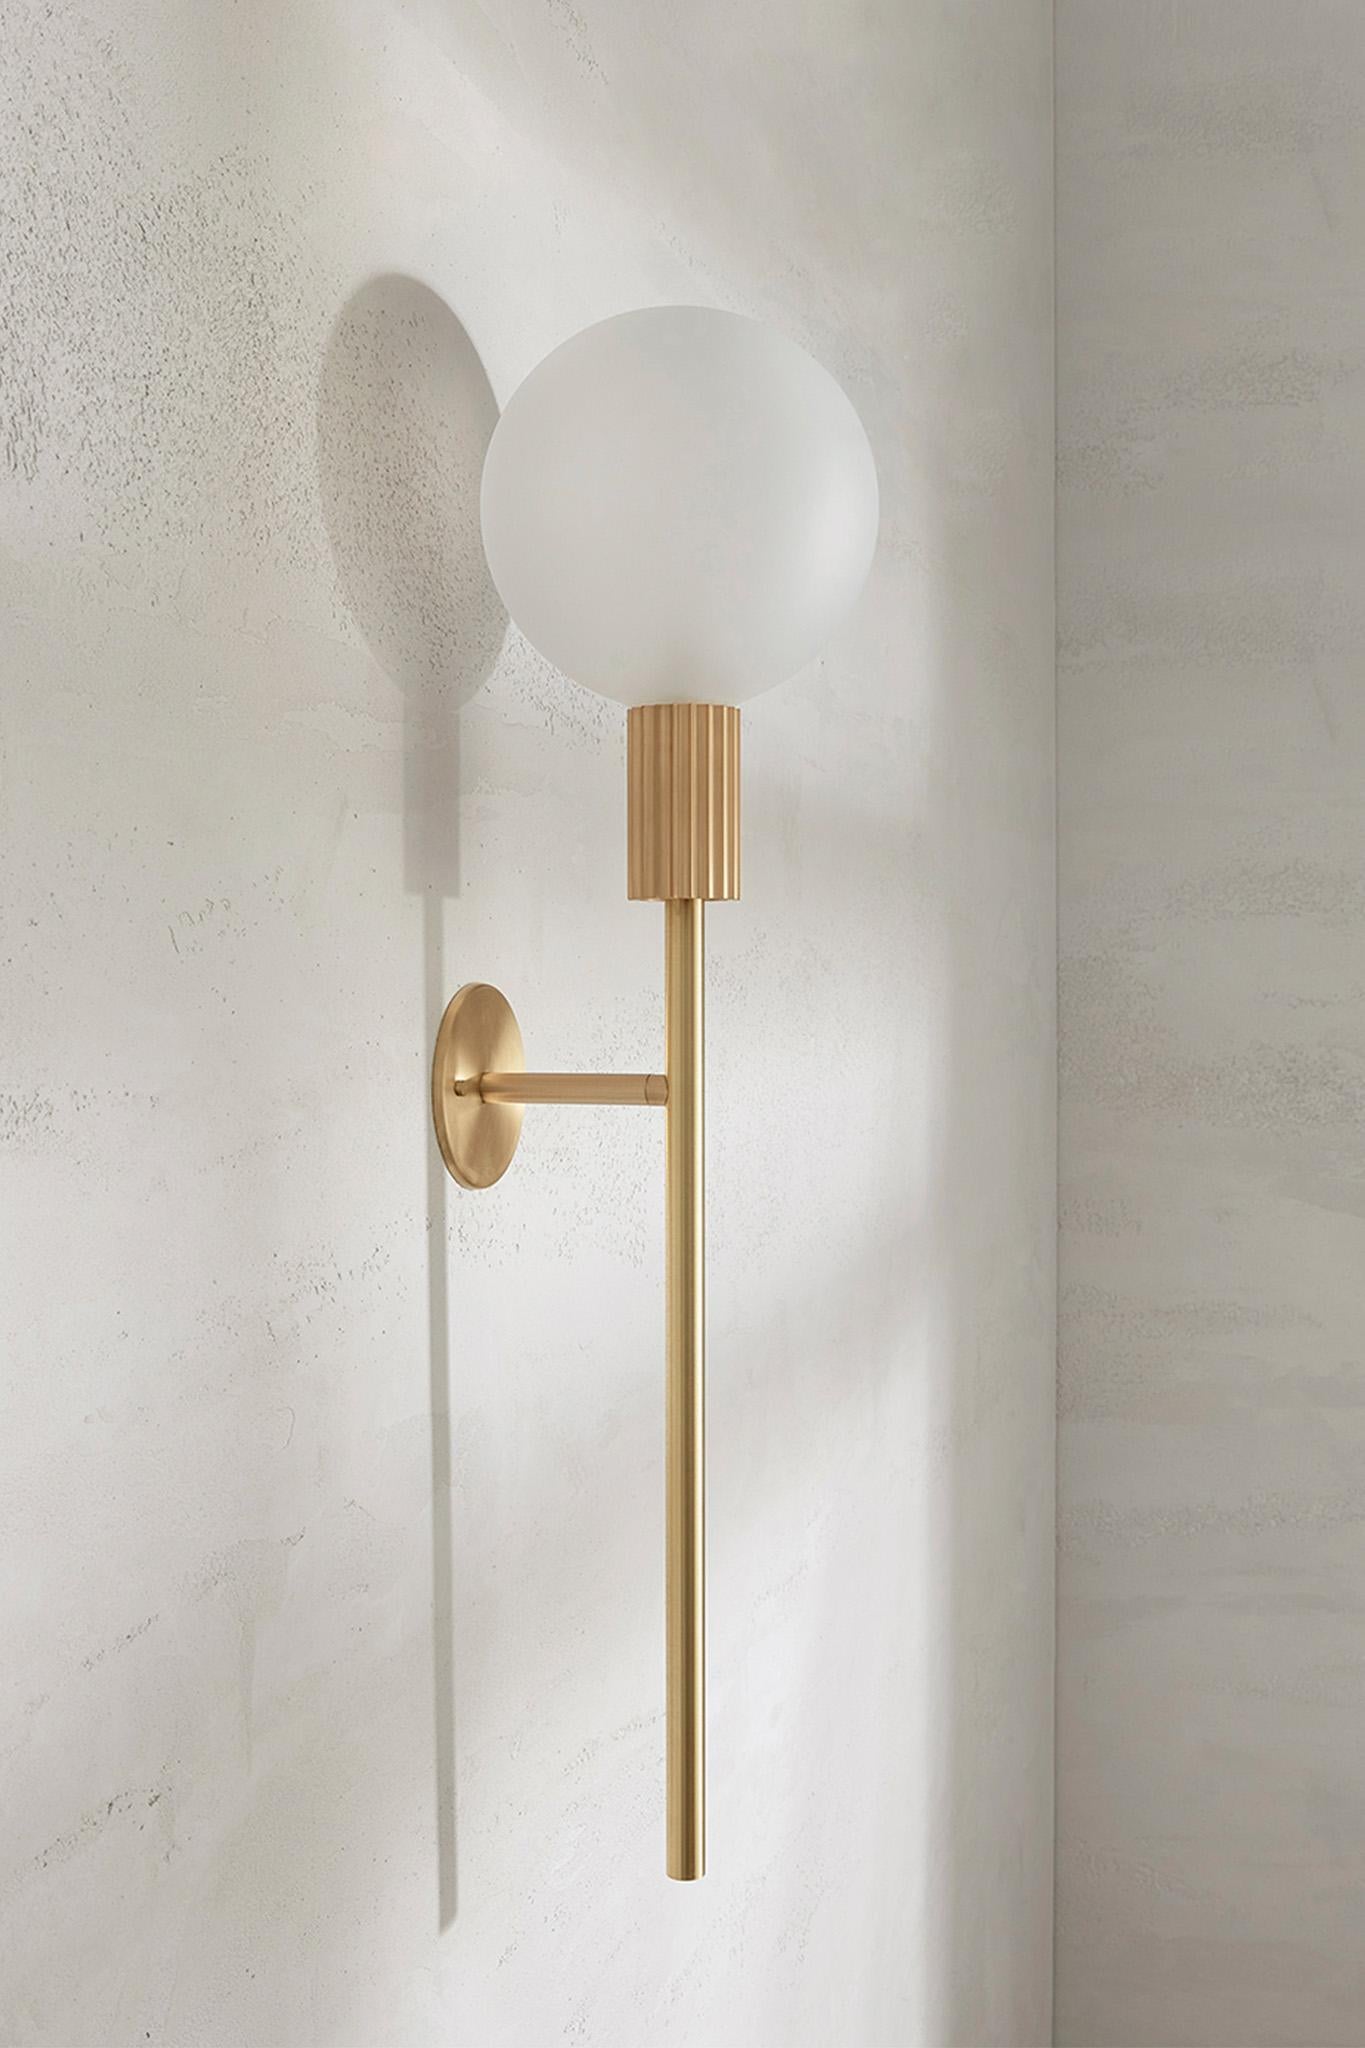 Die Attalos Wall Light, 200, ist eine neue Ergänzung der aktuellen Attalos-Reihe und behält ihre klassische skulpturale Ästhetik bei, die an antike griechische Architekturformen erinnert. Mit einer mattierten LED-Kugel, die auf einem Sockel und